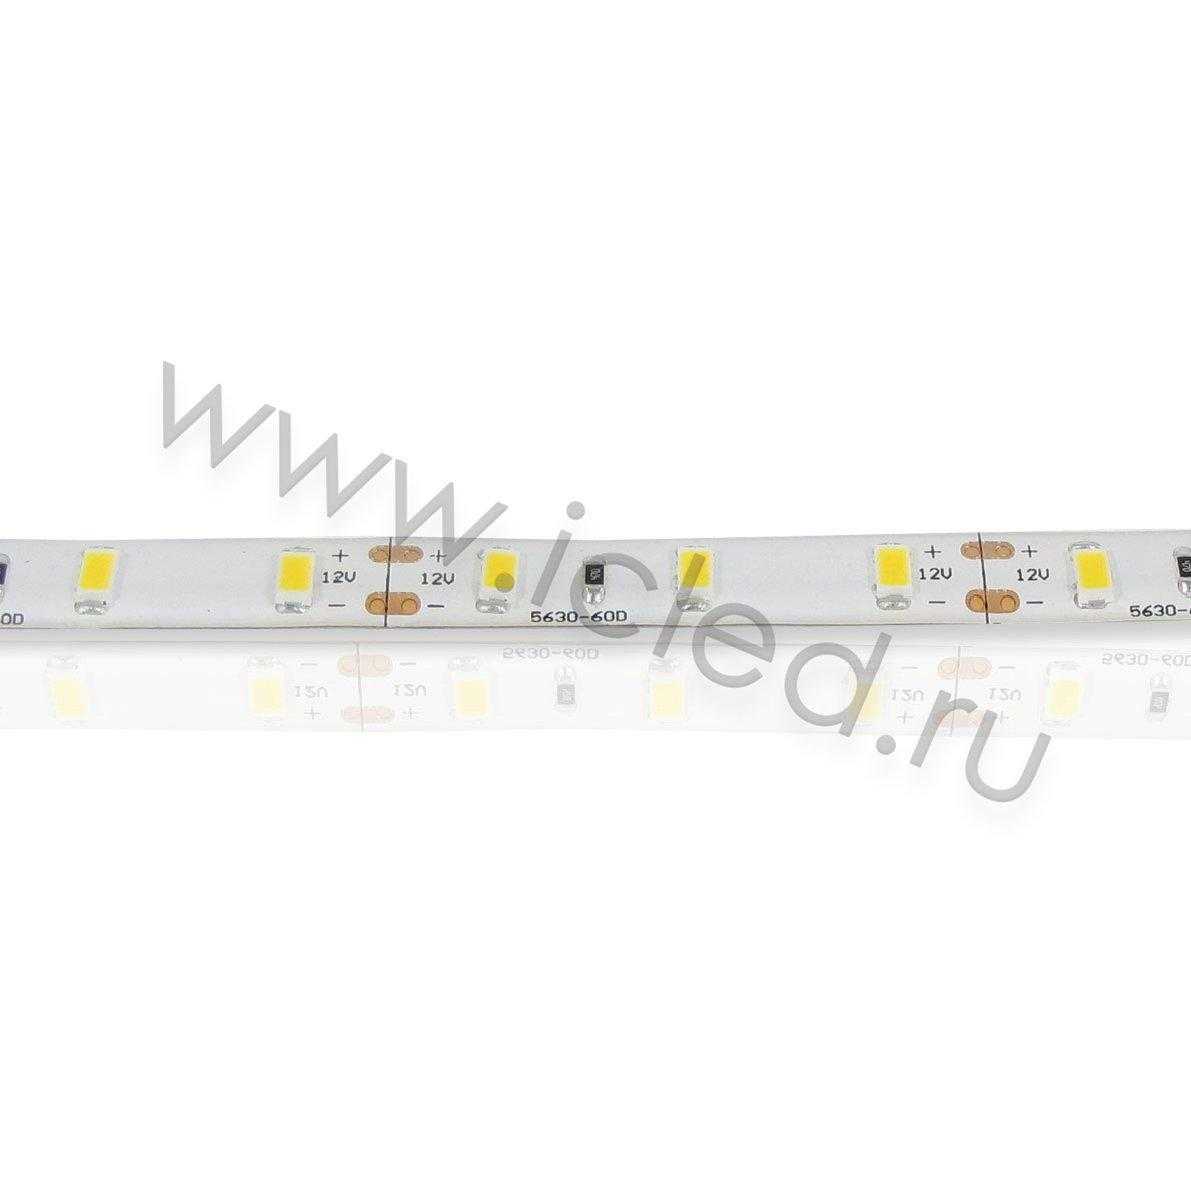 Влагозащищенные светодиодные ленты Светодиодная лента Standart PRO class, 5630, 60led/m, warm white,12V, IP65, P323 Icled